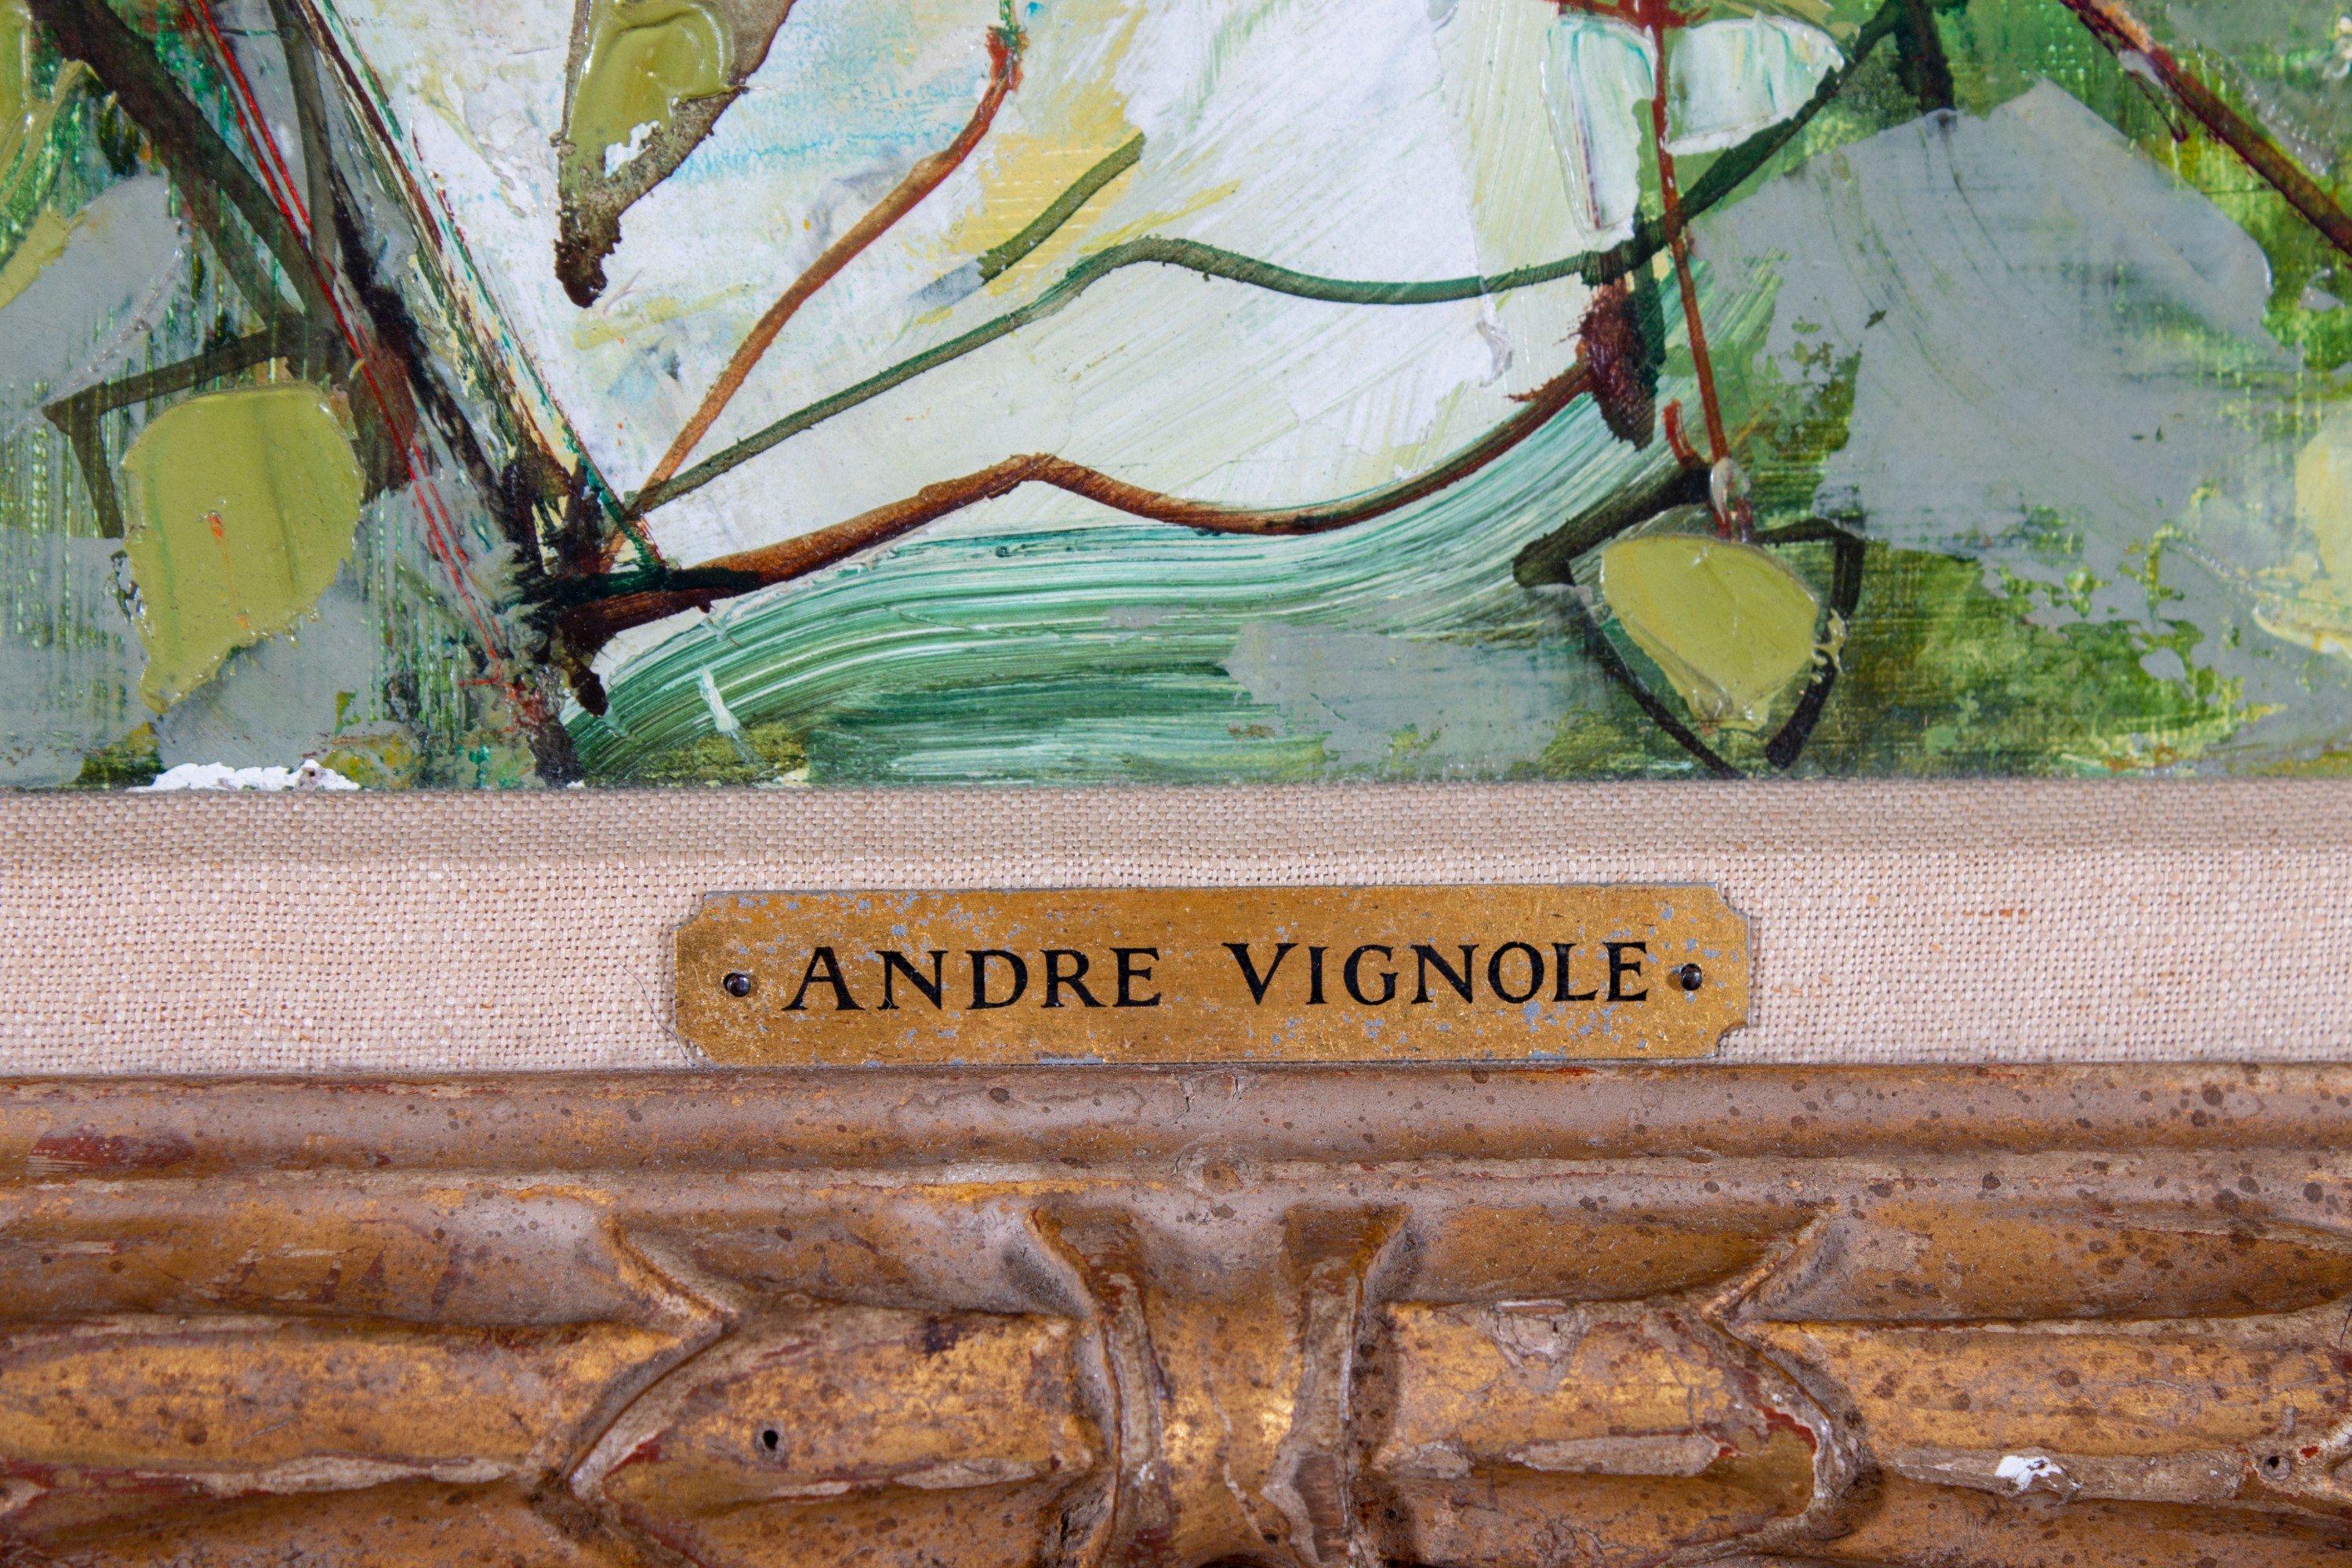 André Vignoles (Französisch, 1920-2017)
Birnen und Paprika, 1957
Öl auf Leinwand
Signiert und datiert unten links
48 Zoll H. x 28 Zoll B., wie gerahmt
39 in. H. x 19 in. B., Leinwand

André Vignoles wurde am 5. August 1920 im Südwesten Frankreichs